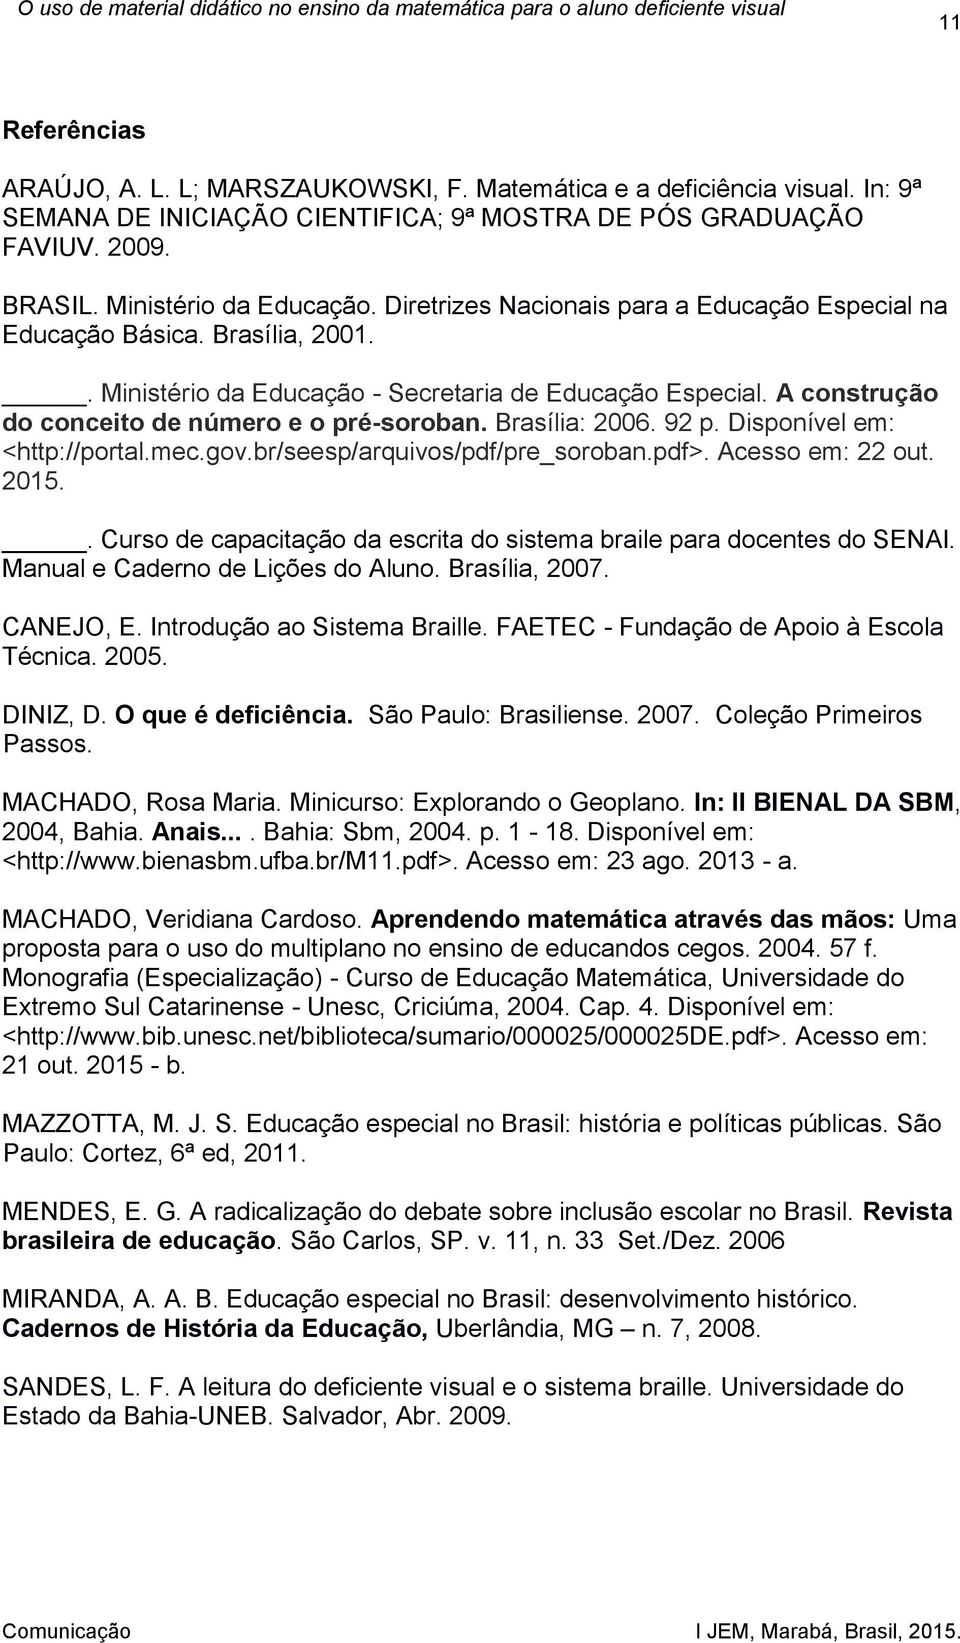 Brasília: 2006. 92 p. Disponível em: <http://portal.mec.gov.br/seesp/arquivos/pdf/pre_soroban.pdf>. Acesso em: 22 out. 2015.. Curso de capacitação da escrita do sistema braile para docentes do SENAI.